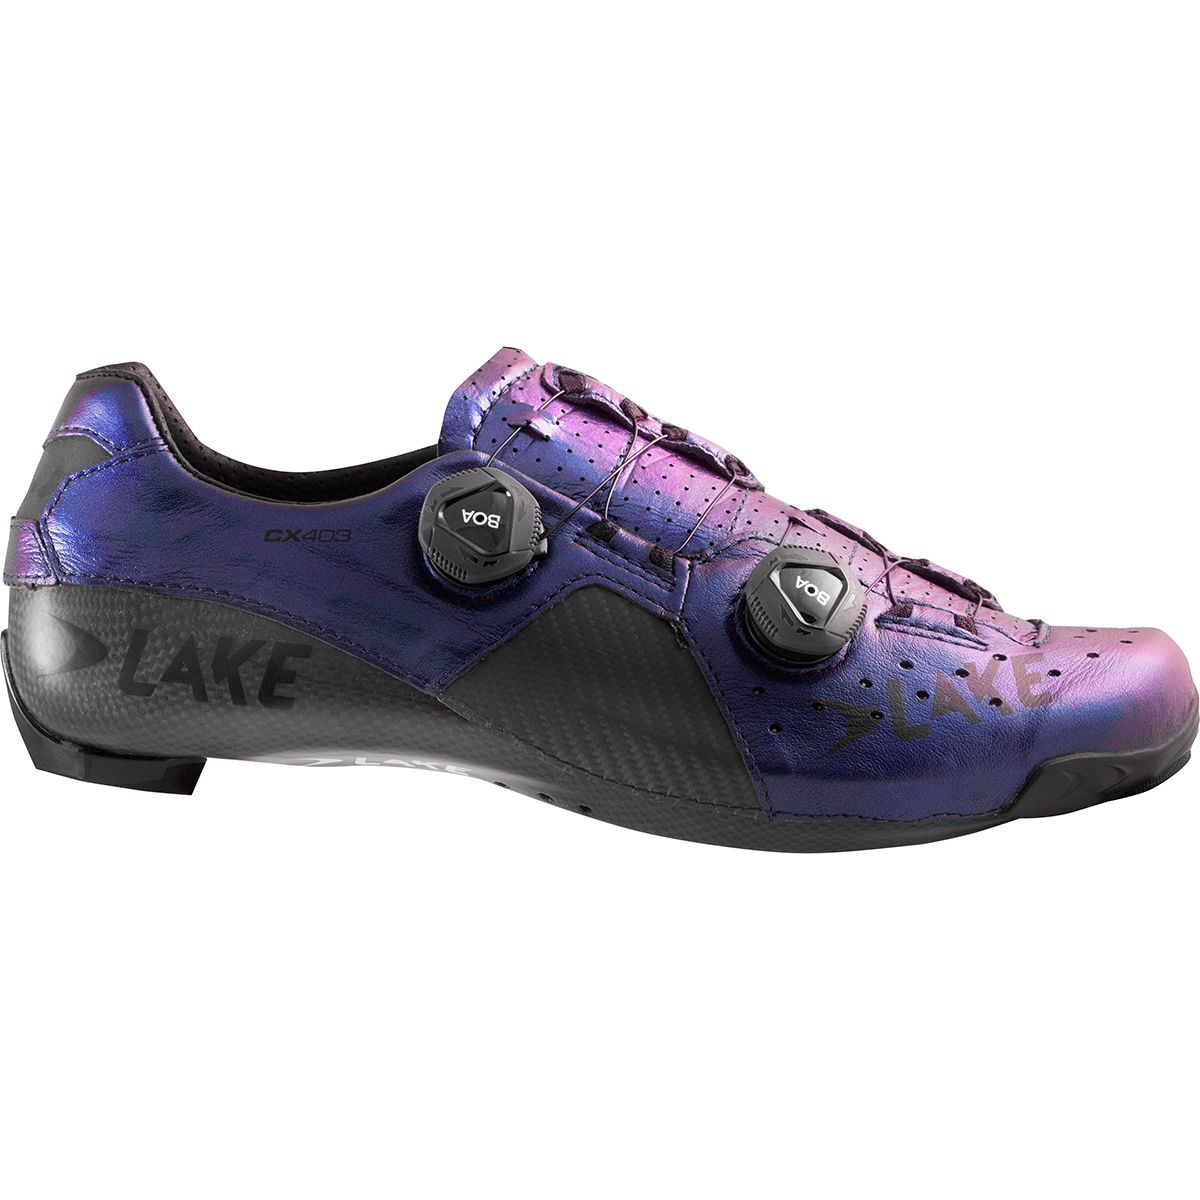 Lake CX403 Cycling Shoe - Men's Chameleon Blue/Black, 39.5